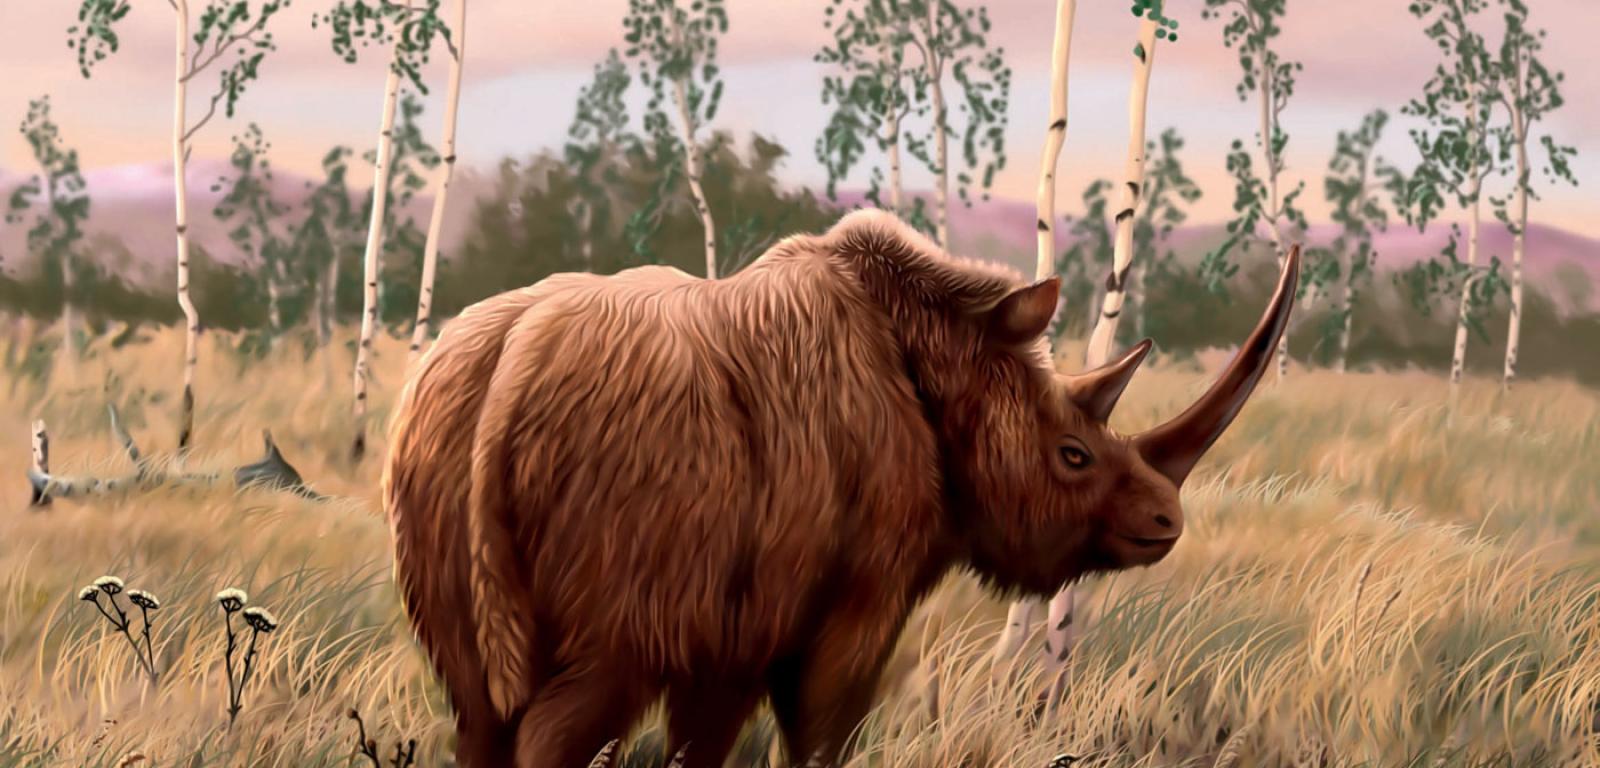 Nosorożec włochaty zamieszkiwał tundry Europy i Azji podczas epoki lodowcowej. Wymarł ok. 10 tys. lat temu. Jego najbliższym żyjącym kuzynem jest nosorożec sumatrzański.